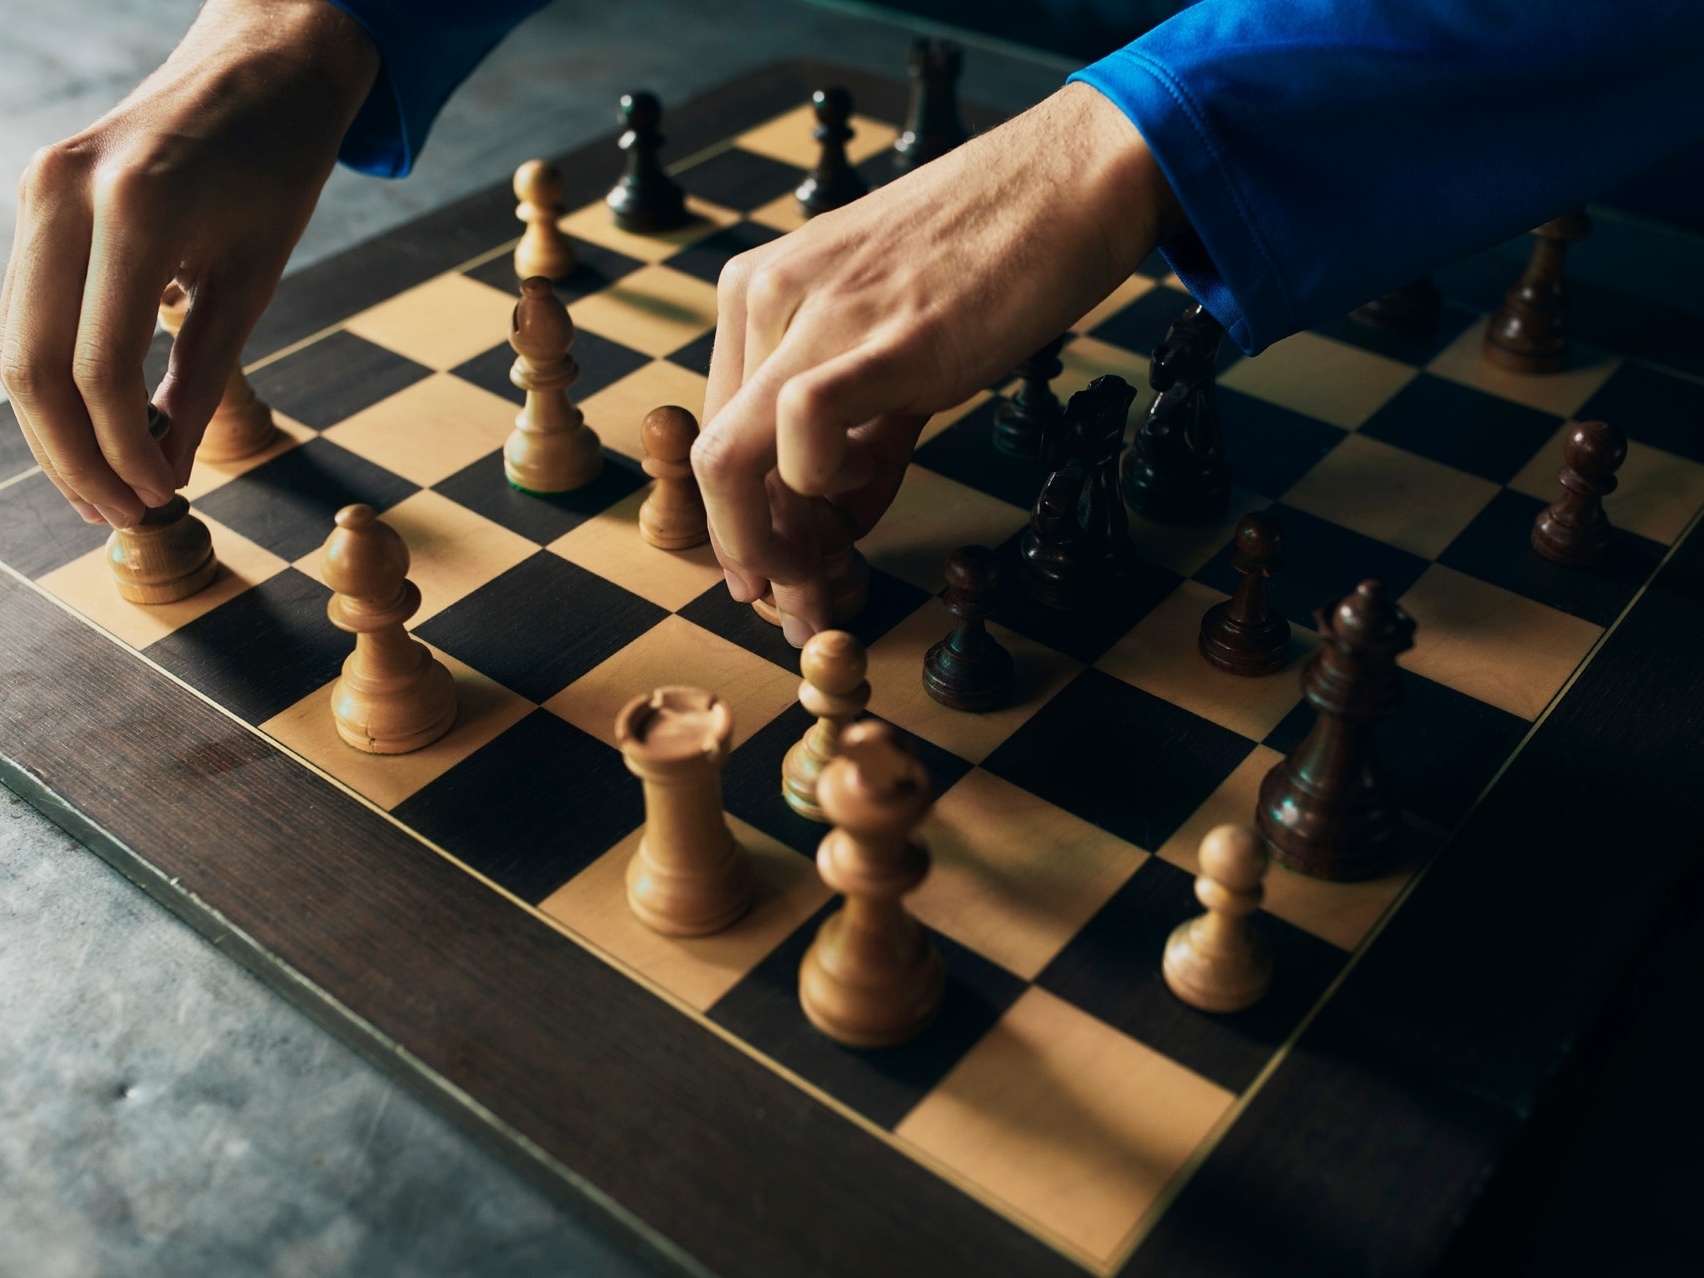 O xadrez realmente ajuda o cérebro? O que dizem os estudos científicos